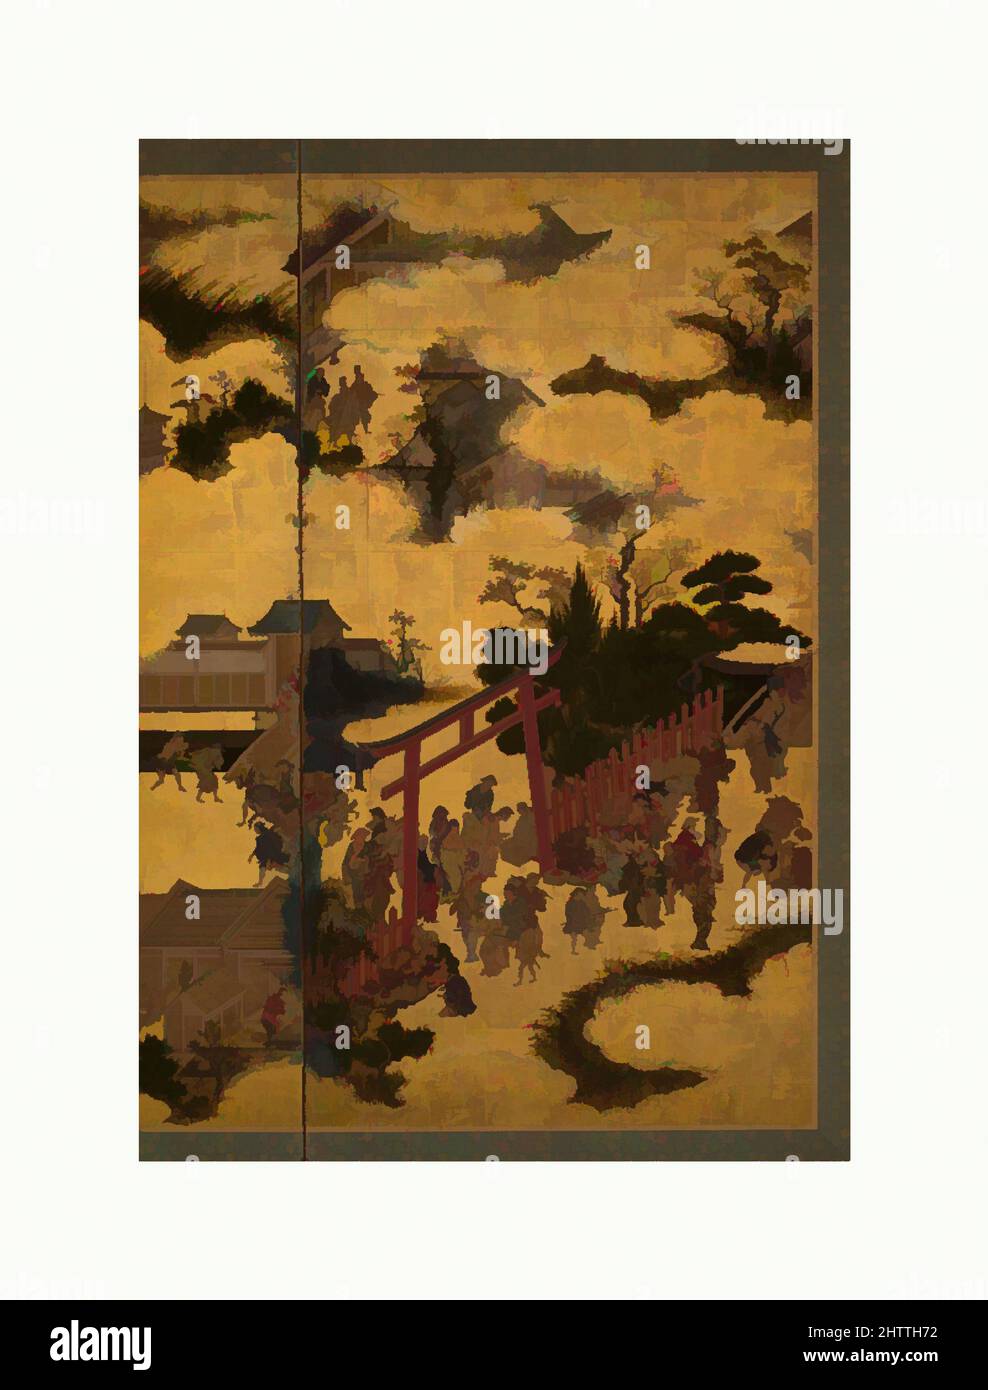 Art inspiré par à la porte du Sanctuaire, période Edo (1615–1868), 17th siècle, Japon, écran rabattable à deux panneaux; encre, couleur et or sur papier, 60 x 64 1/4 cm (152,4 x 163,2 cm), écrans, cette vue panoramique d'un sanctuaire shinto et de ses environs offre une scène animée du XVIIe siècle, des œuvres classiques modernisées par Artotop avec une touche de modernité. Formes, couleur et valeur, impact visuel accrocheur sur l'art émotions par la liberté d'œuvres d'art d'une manière contemporaine. Un message intemporel qui cherche une nouvelle direction créative. Artistes qui se tournent vers le support numérique et créent le NFT Artotop Banque D'Images